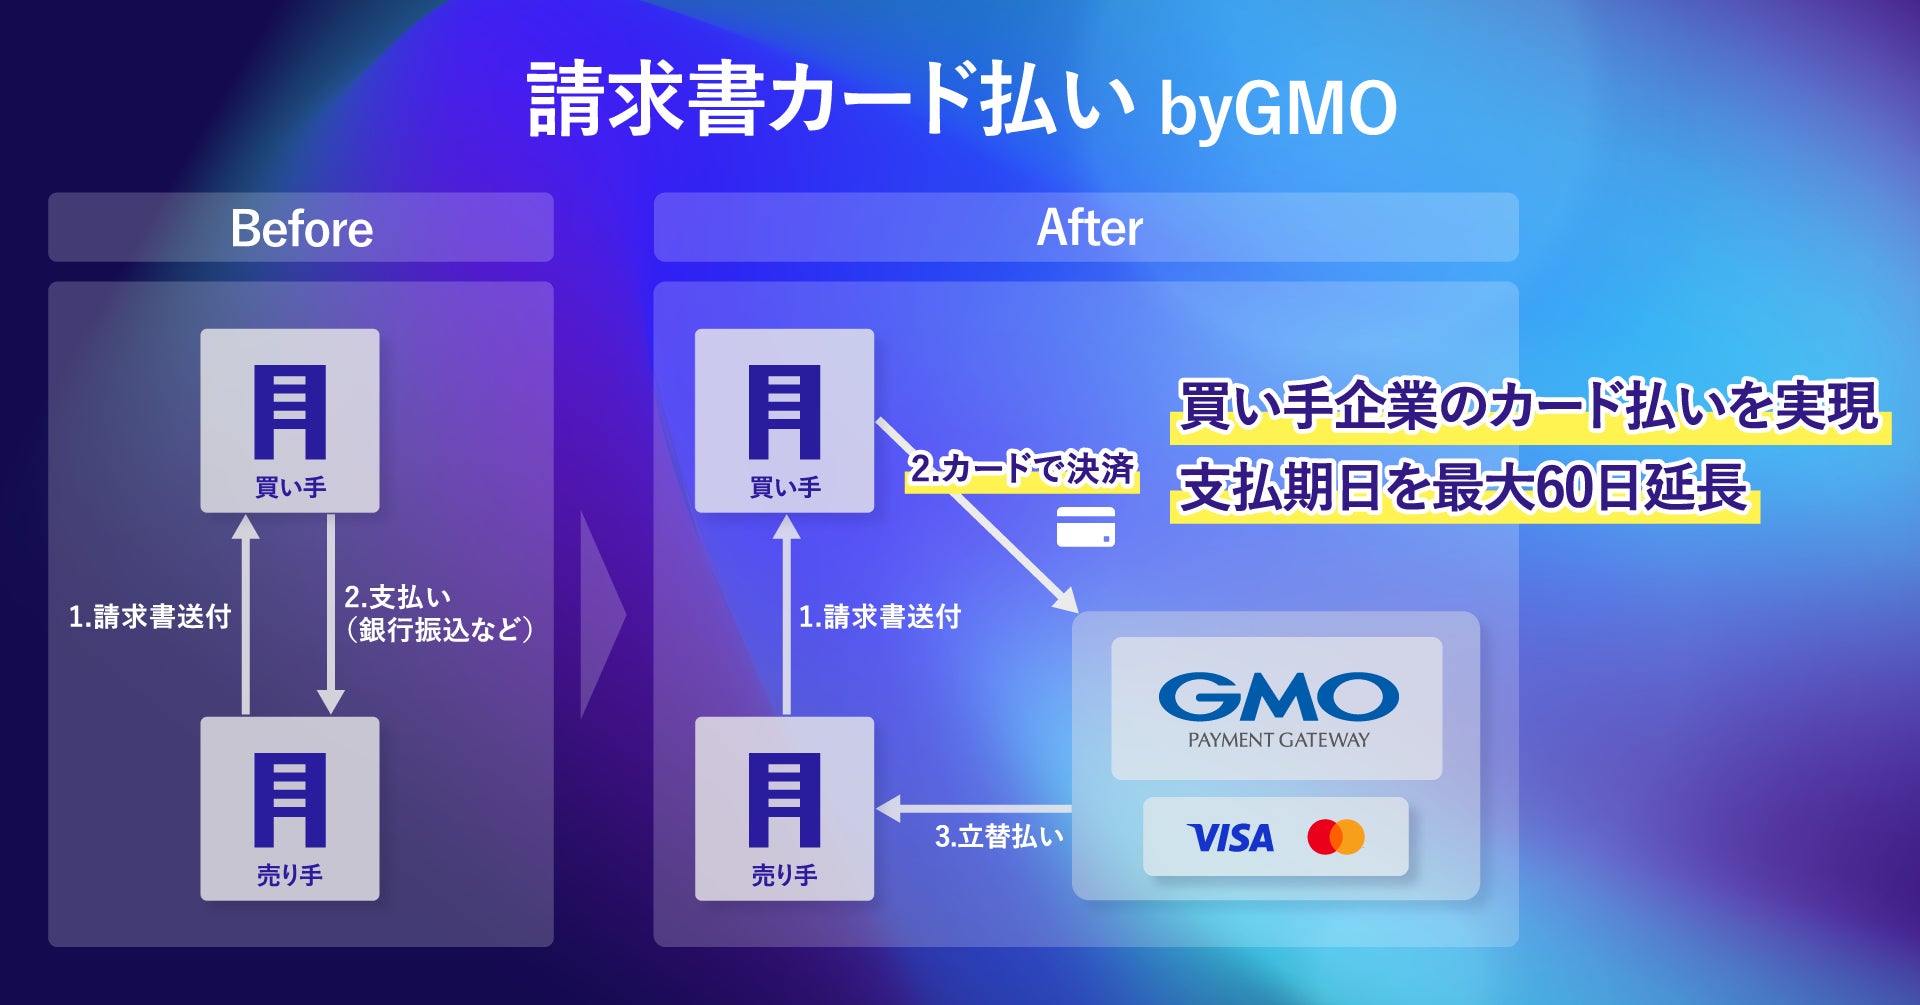 BtoB取引のカード払いを実現する「請求書カード払い byGMO」を提供【GMOペイメントゲートウェイ】